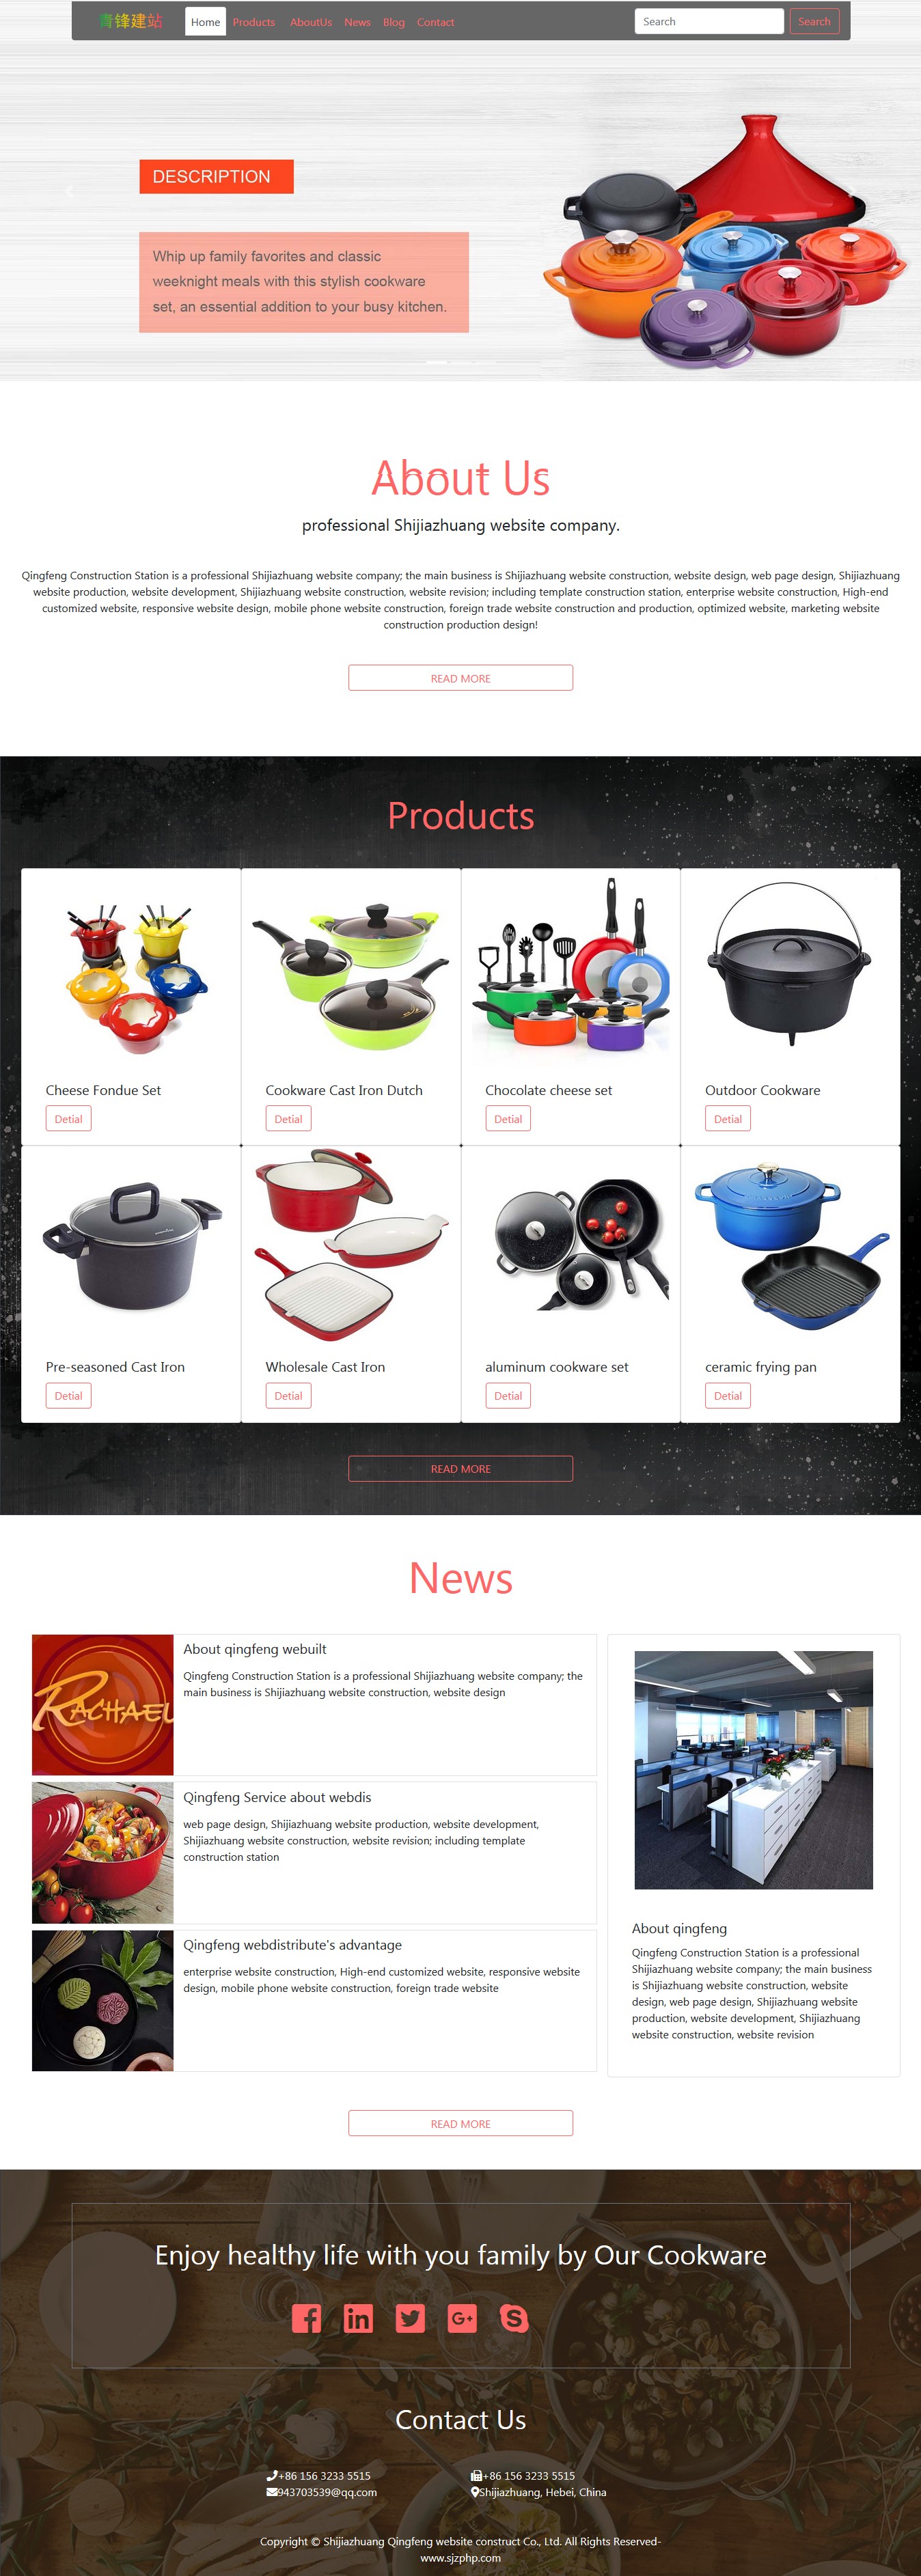 雅黑红色调炊具锅具外贸网站模板下载